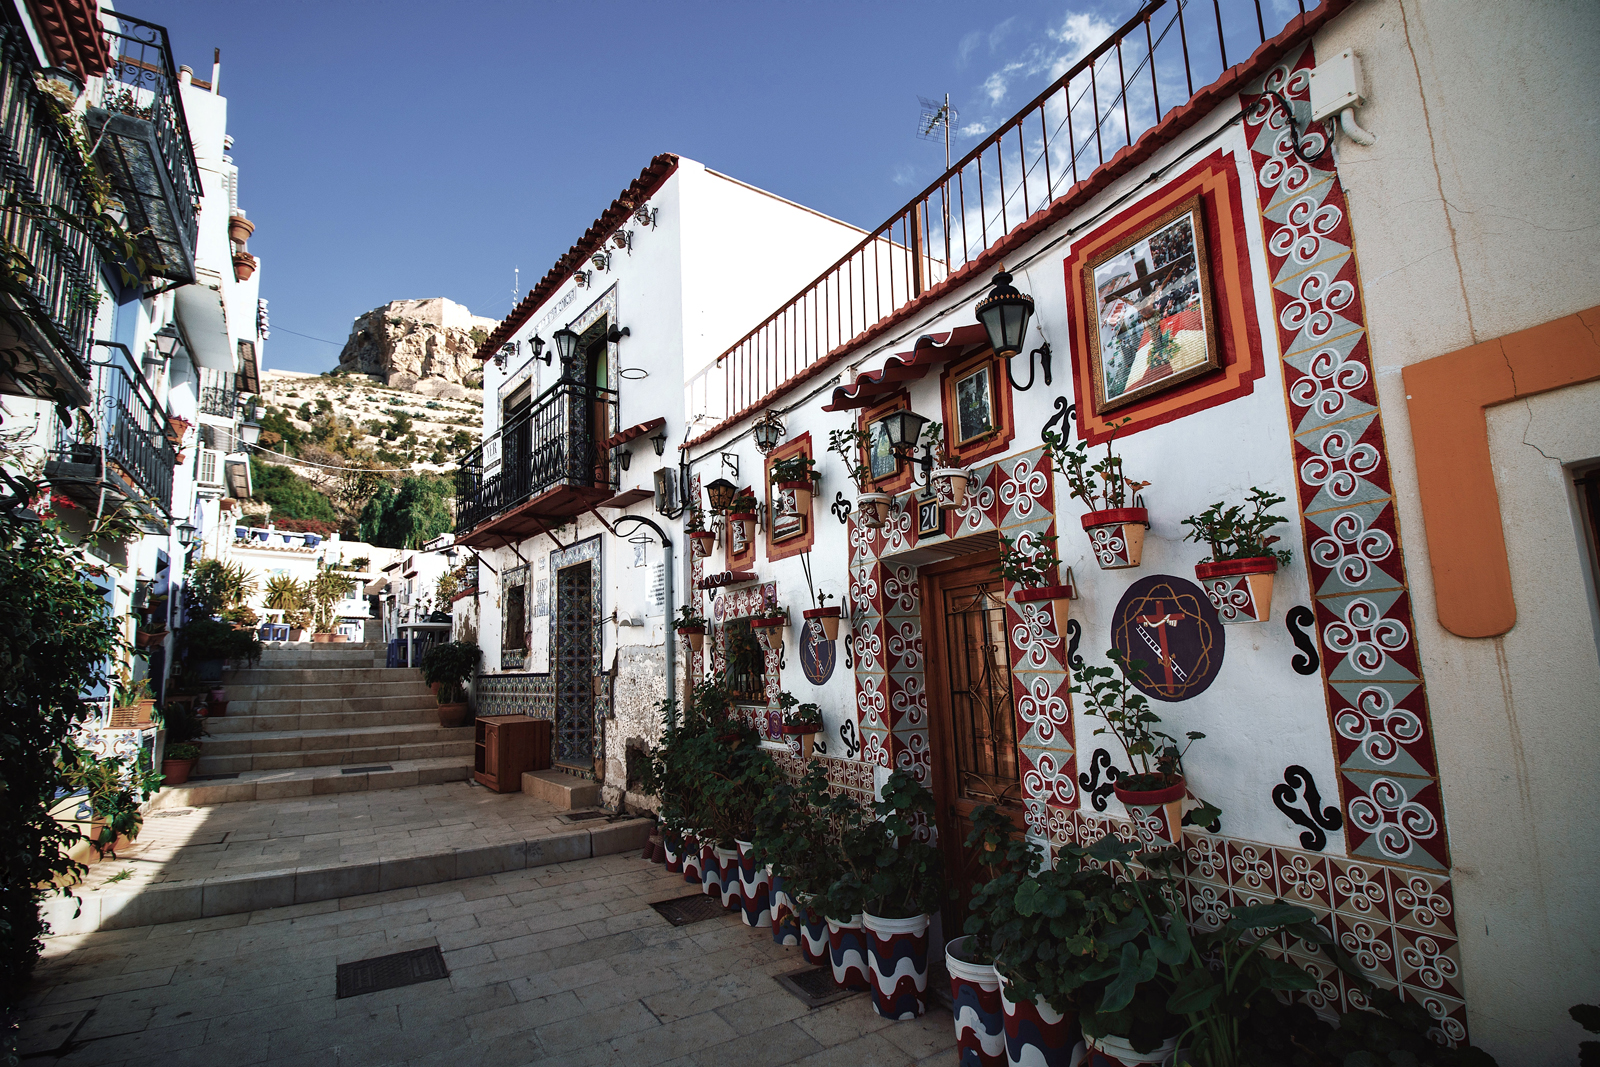 El Barrio de Santa Cruz es el más colorido de Alicante. La tan original decoración de estilo mediterránea, de las casas construidas en la ladera del monte Benacantil, le da una personalidad única al lugar.